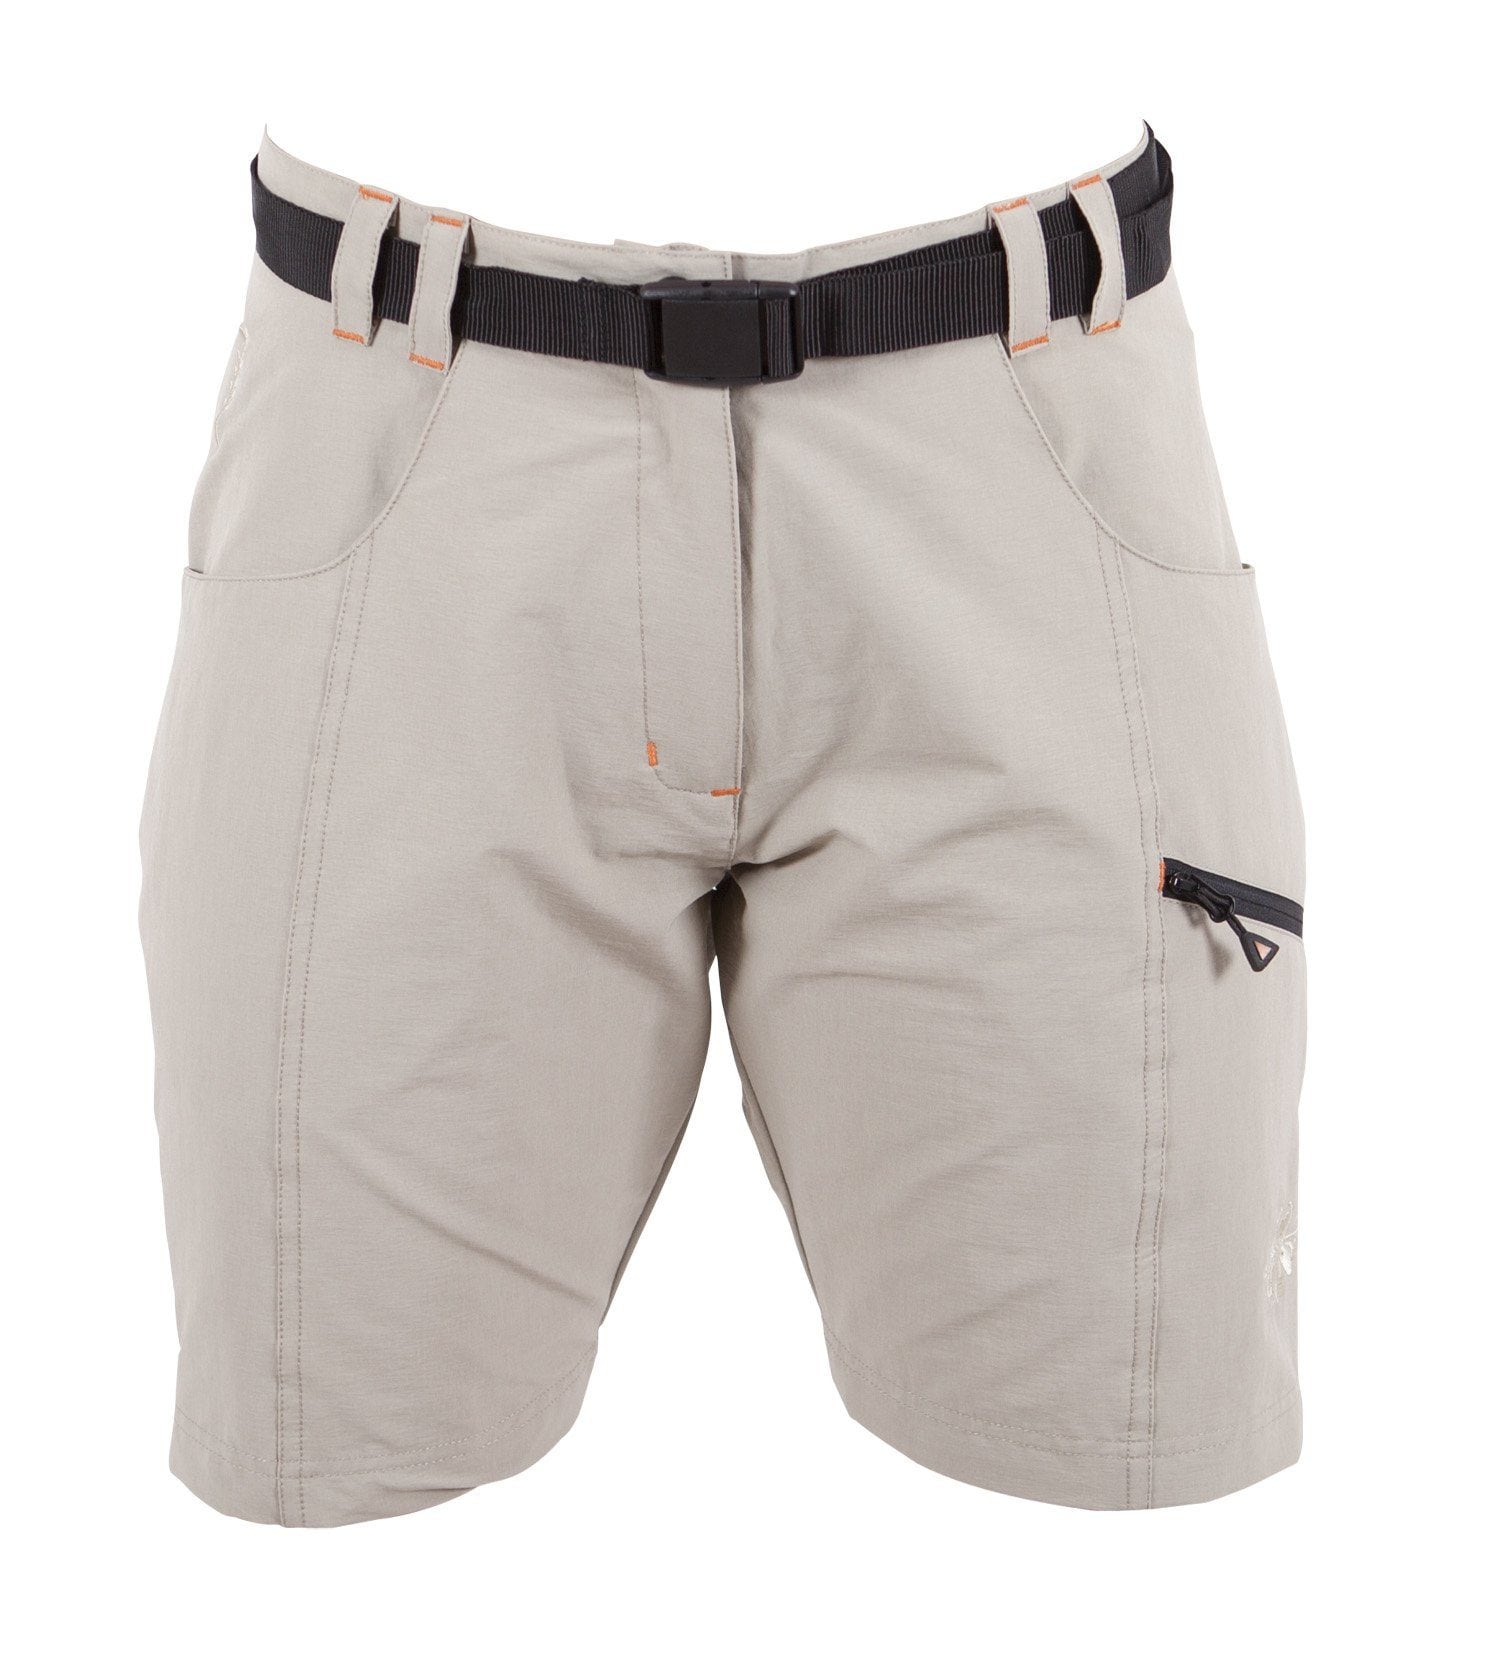 Bermudas »KENORA Full Stretch Short & kurze Hose«, auch in Grossen Grössen erhältlich